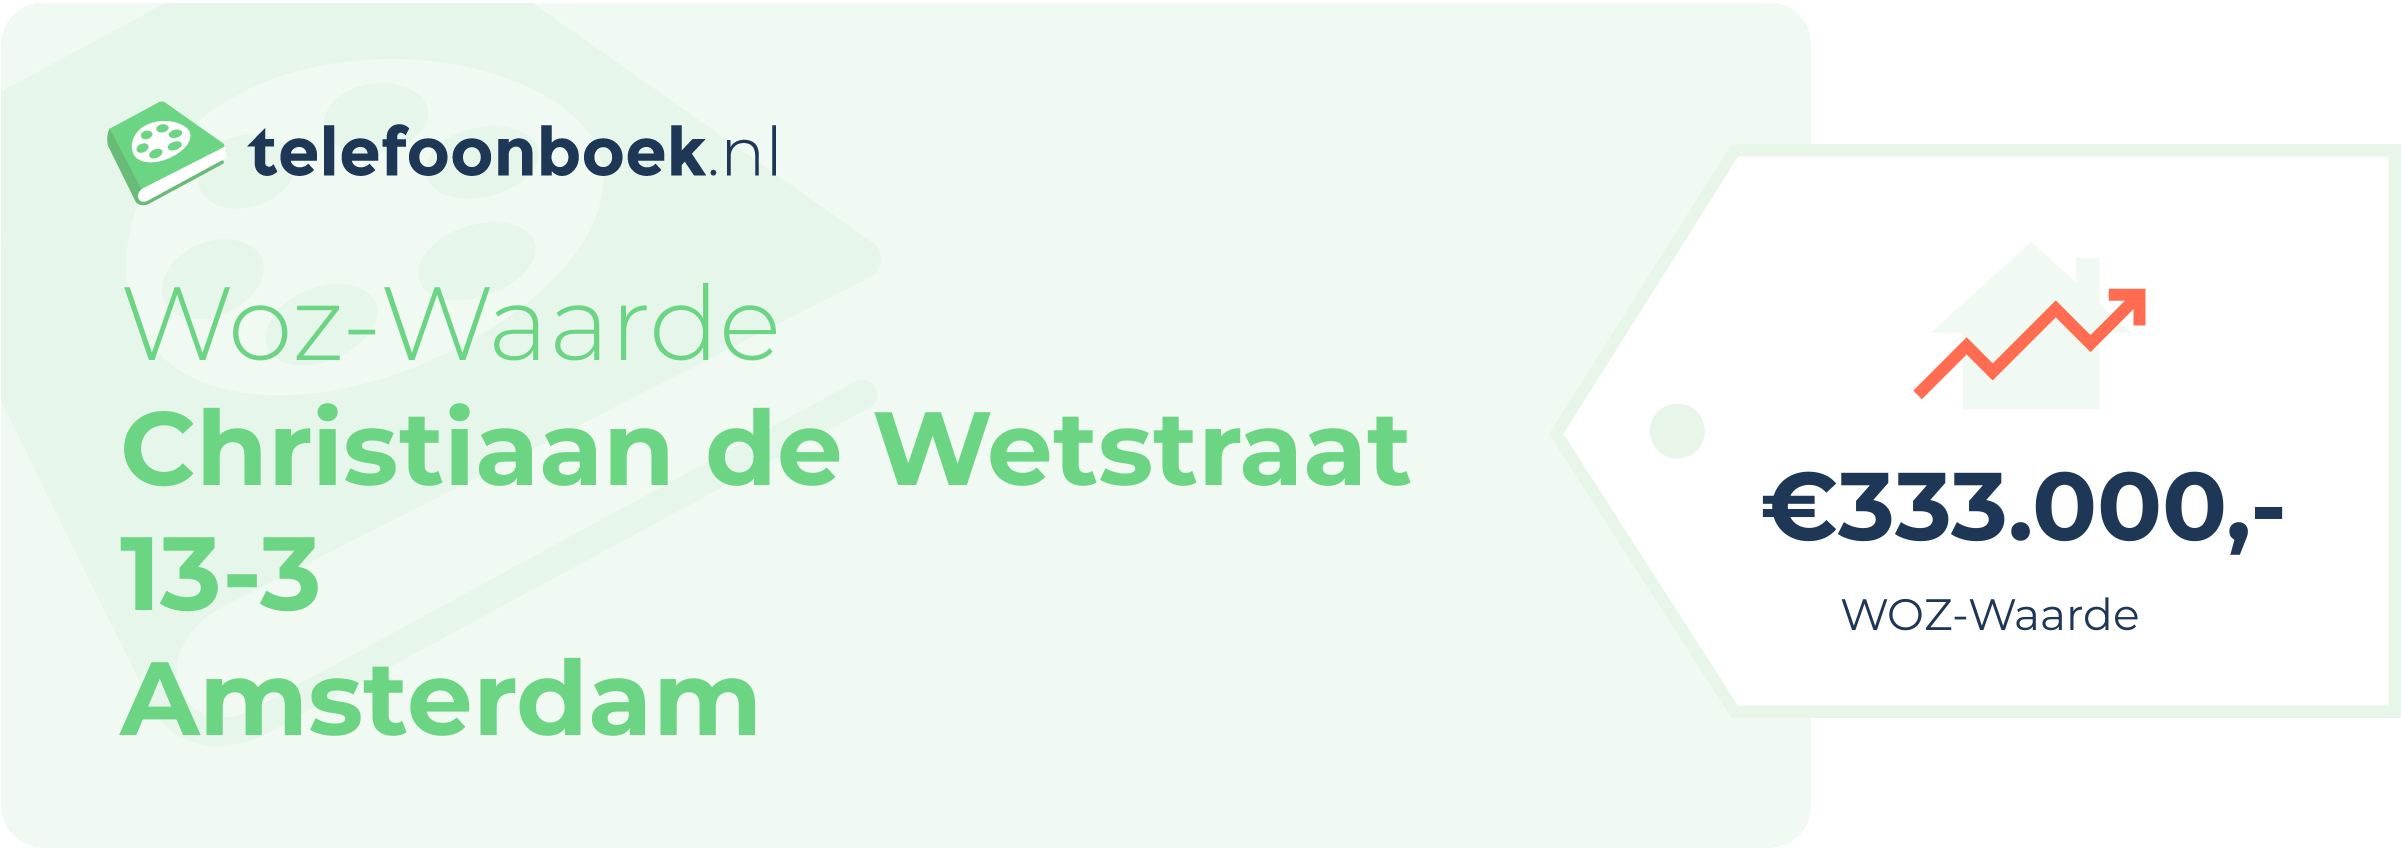 WOZ-waarde Christiaan De Wetstraat 13-3 Amsterdam